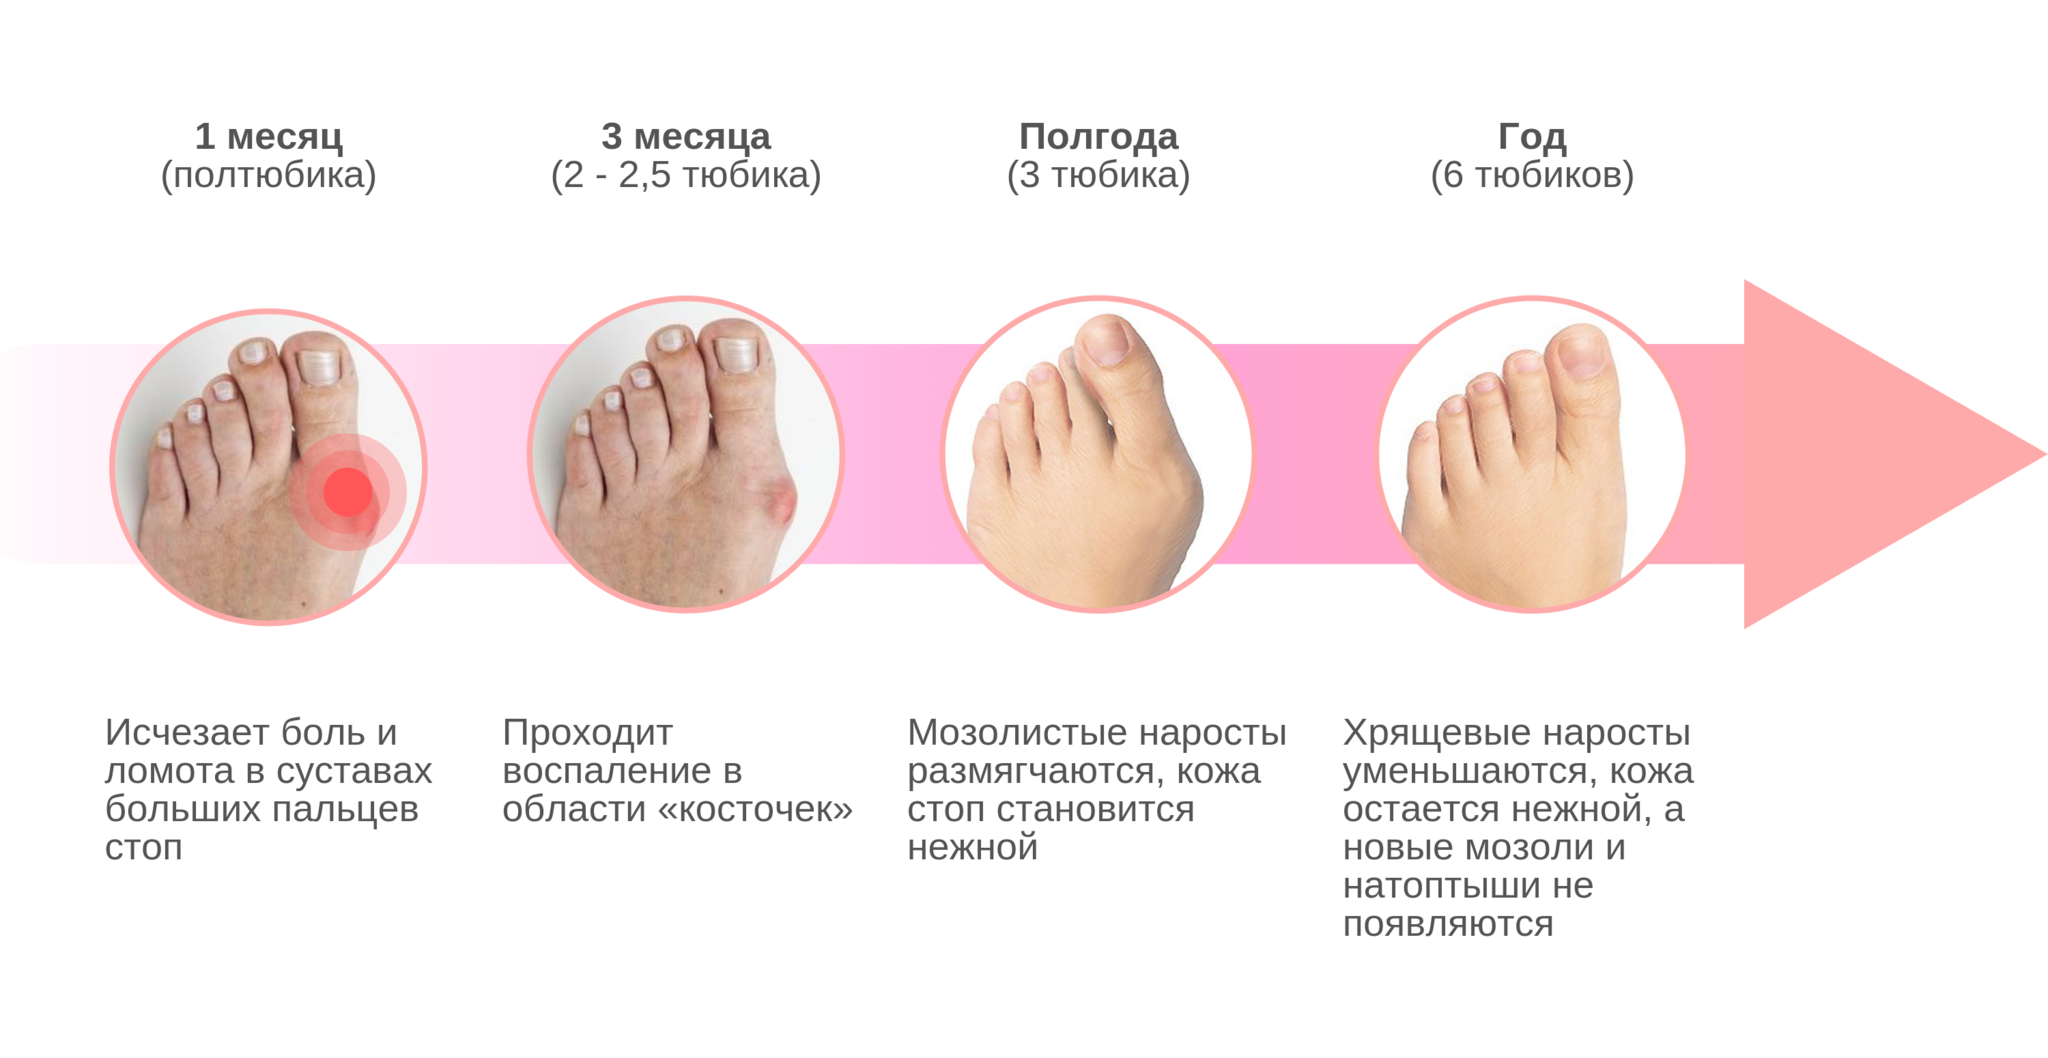 Вальгусная деформация большого пальца ноги